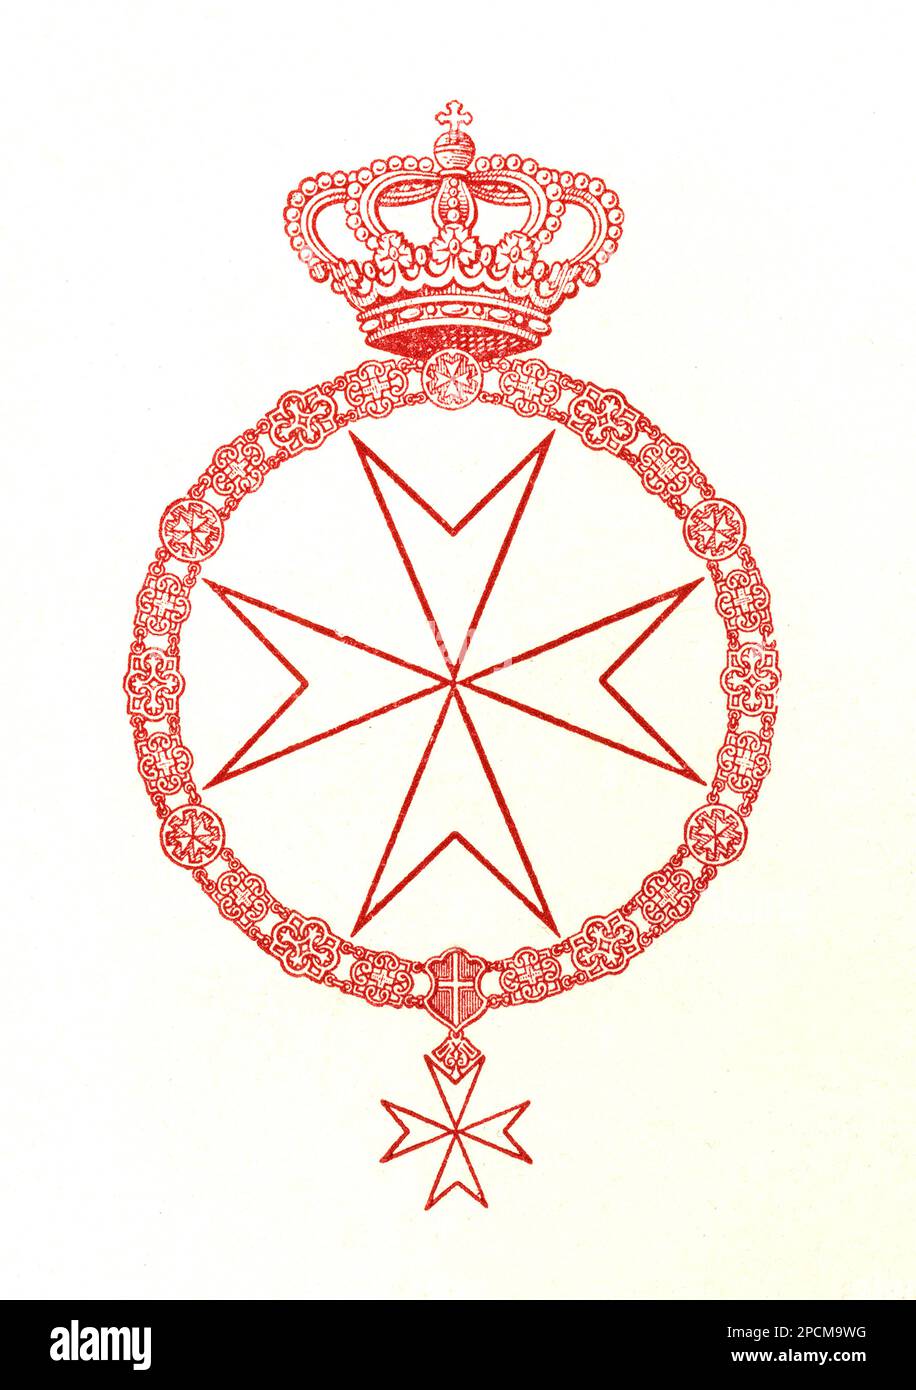 1939: Lo stemma del SOPRANO italiano ORDINE DI MALTA , S.M.O. DEI CAVALIERI DI MALTA . Il Sovrano militare Ordine ospedaliero di San Giovanni di Gerusalemme, di Rodi e di Malta, meglio conosciuto come Sovrano militare Ordine di Malta (SMOM), è un ordine religioso cattolico romano. - SMO - S M o - nobiltà italiana - nobiltà - nobili - STORIA - FOTO STORICHE - CAVALIERATO - CROCE - insegna ARALDICA - sistema ARALDICO - Cavalieri Ospedali - Rodos - Cavalieri Ospitalieri - Cavalieri Ospitalieri - Cavalieri Ospitalieri - Sovrano Ordine dei Cavalieri di Malta --- Archivio GBB Foto Stock